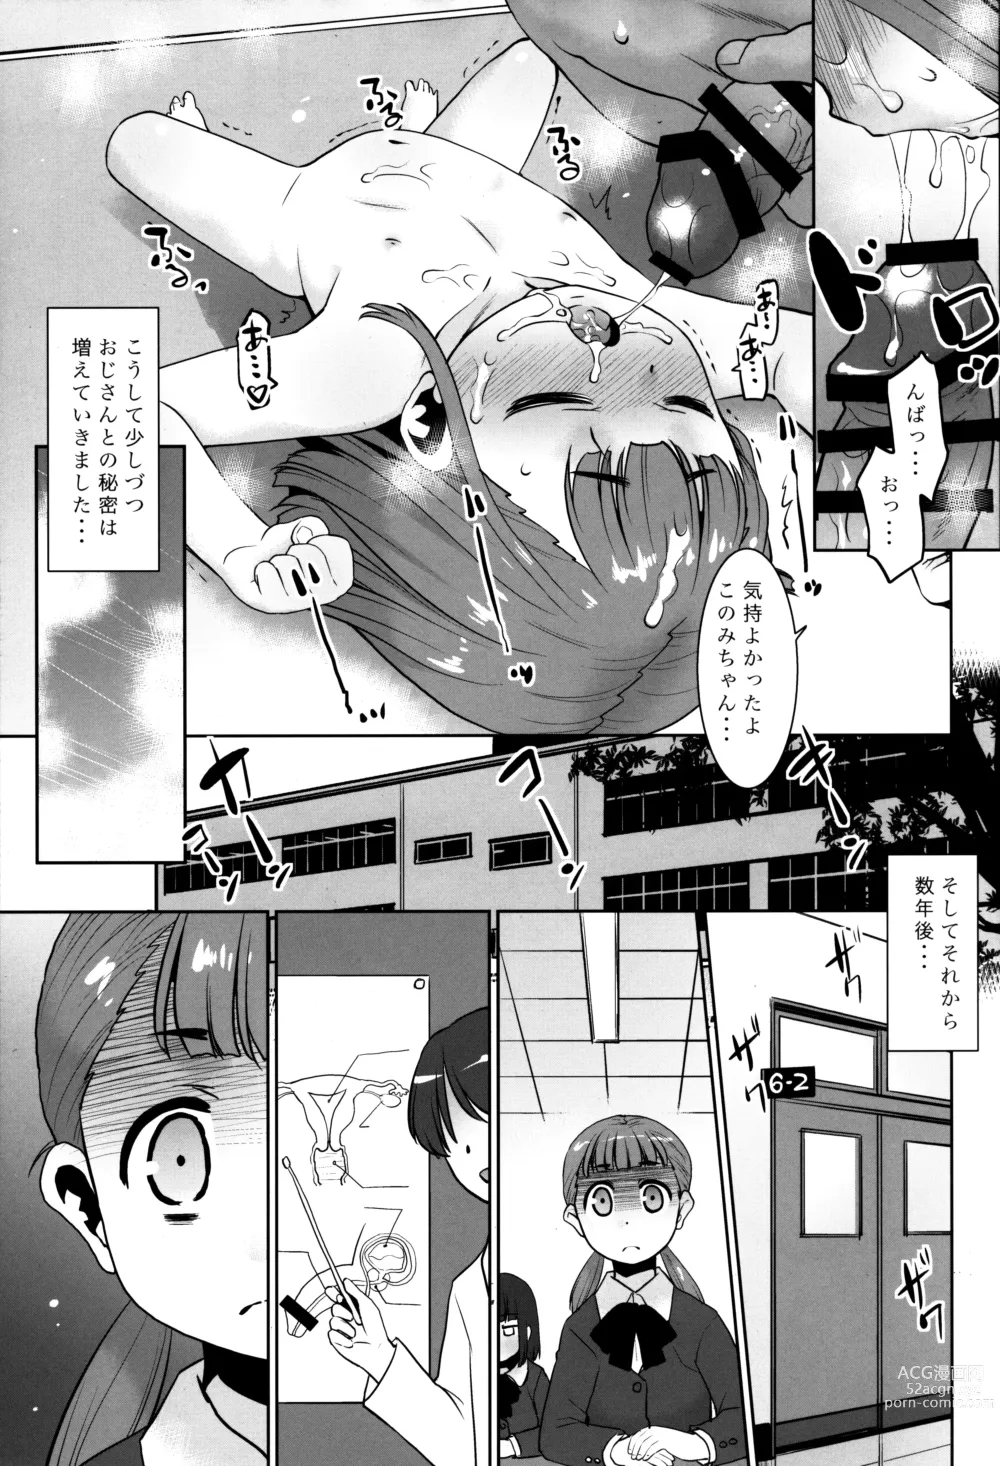 Page 14 of doujinshi Shouji Oji-san no koto.